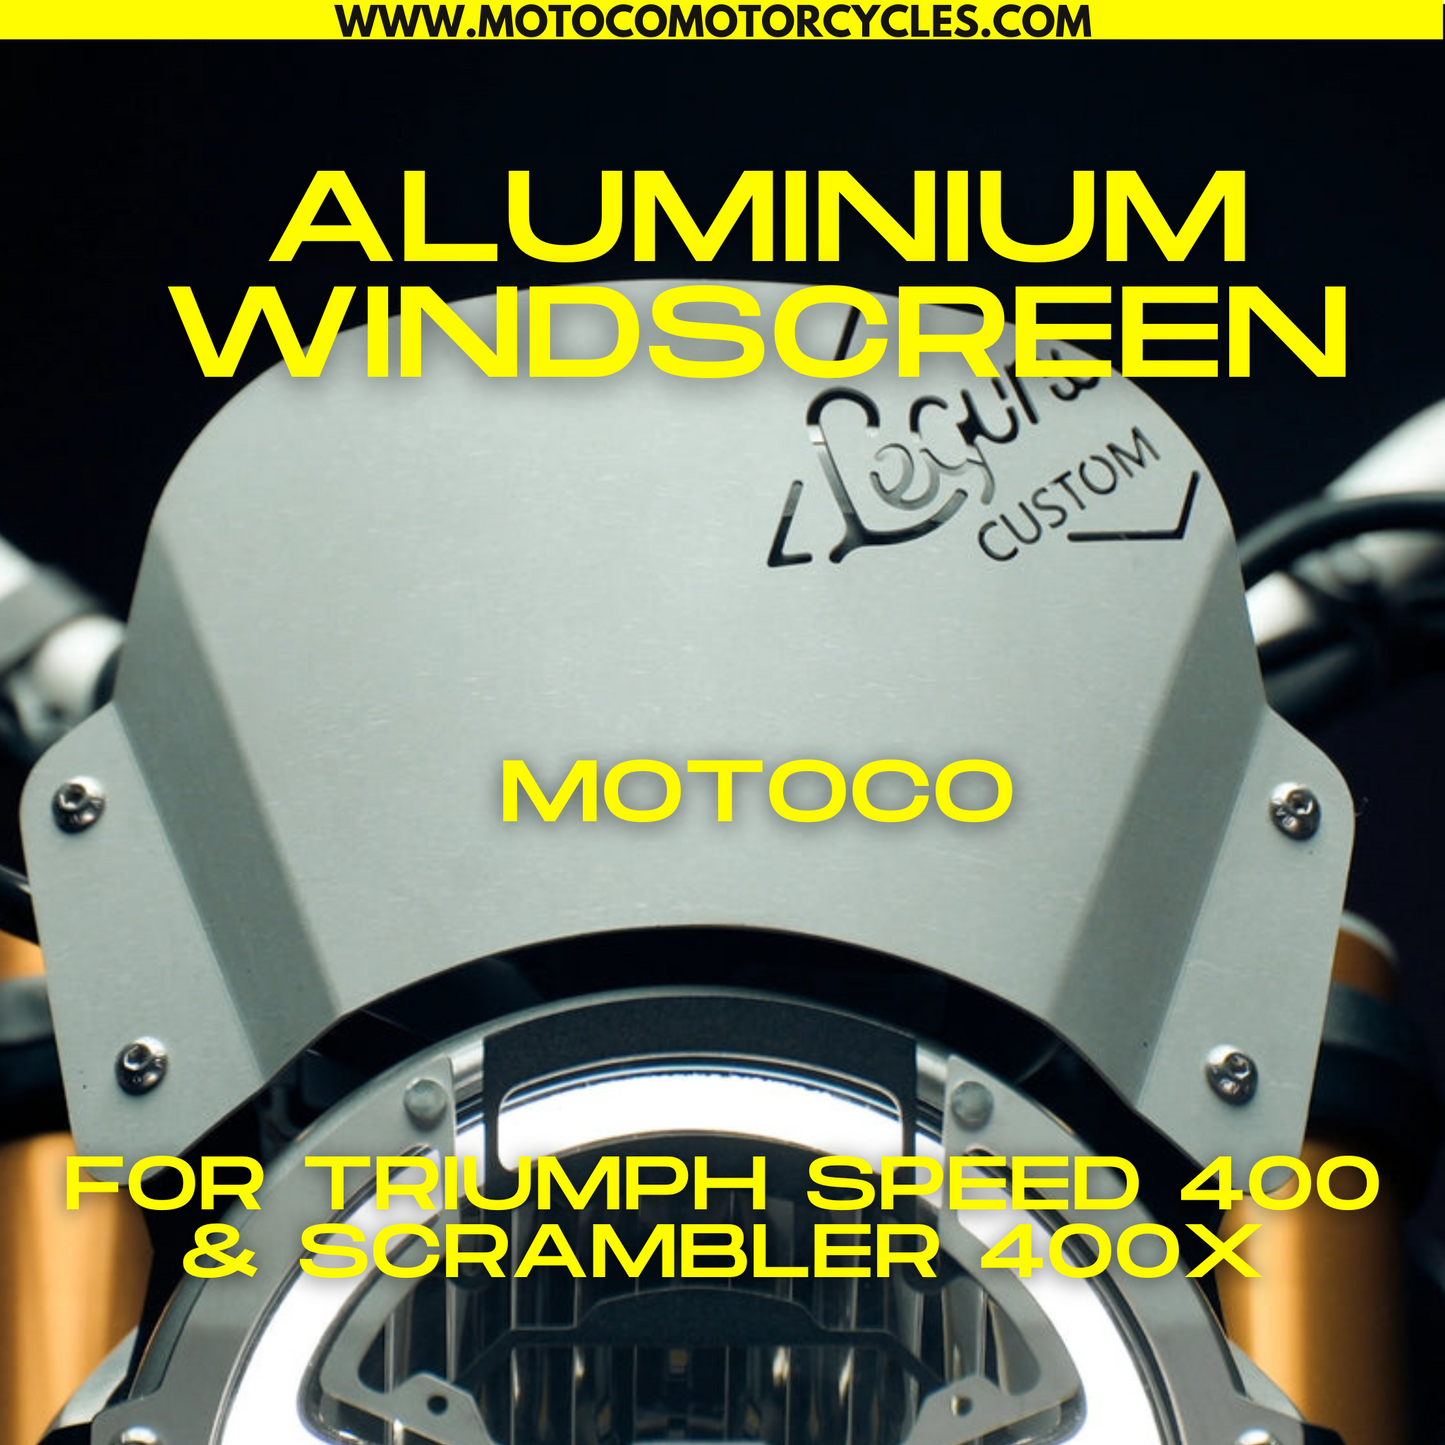 Aluminium Windscreen For Triumph Speed 400 & Scrambler 400 X